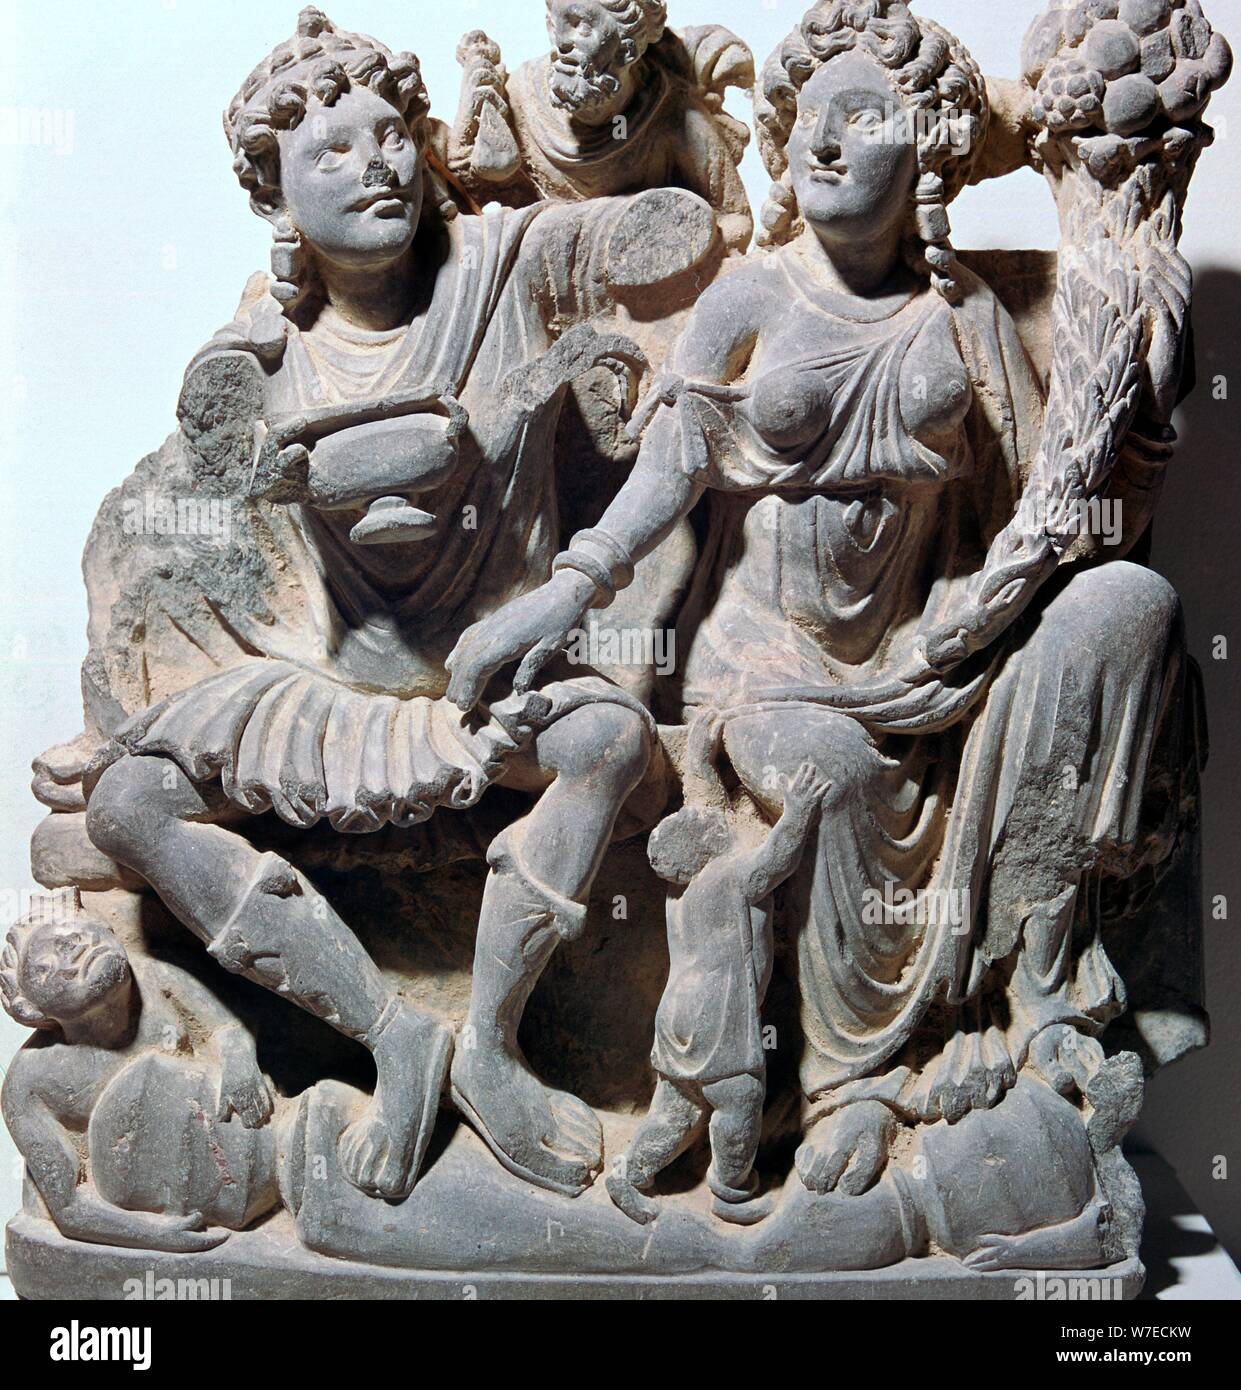 Estatuilla de Haritiki y Pangika. Artista: Desconocido Foto de stock